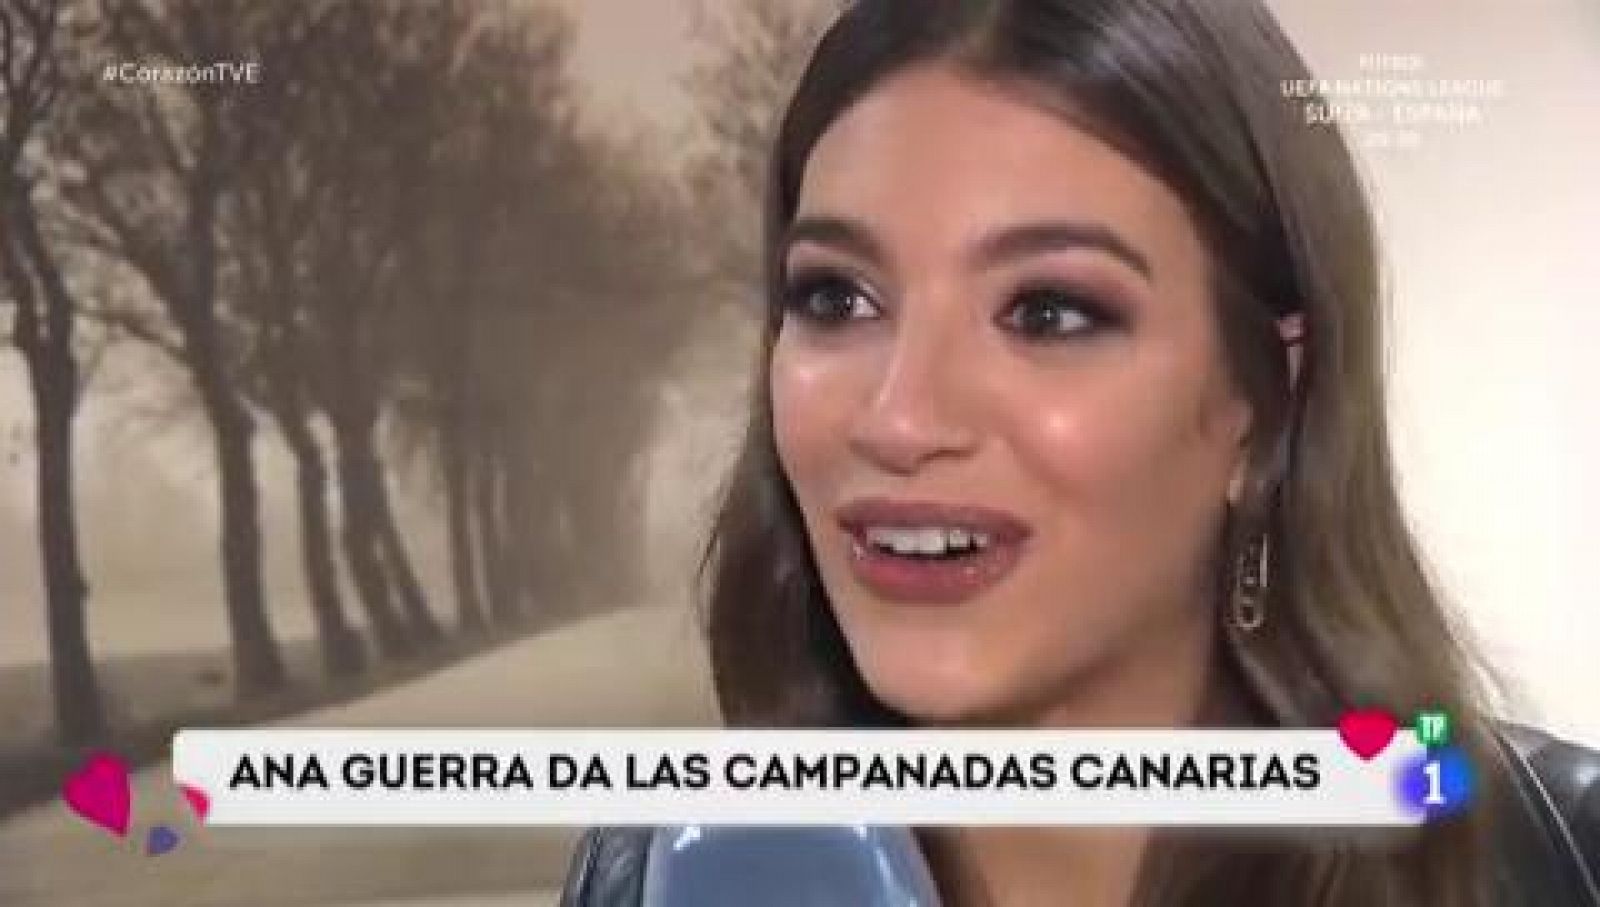 Corazón - Ana Guerra dará las campanadas canarias en Televisión Española